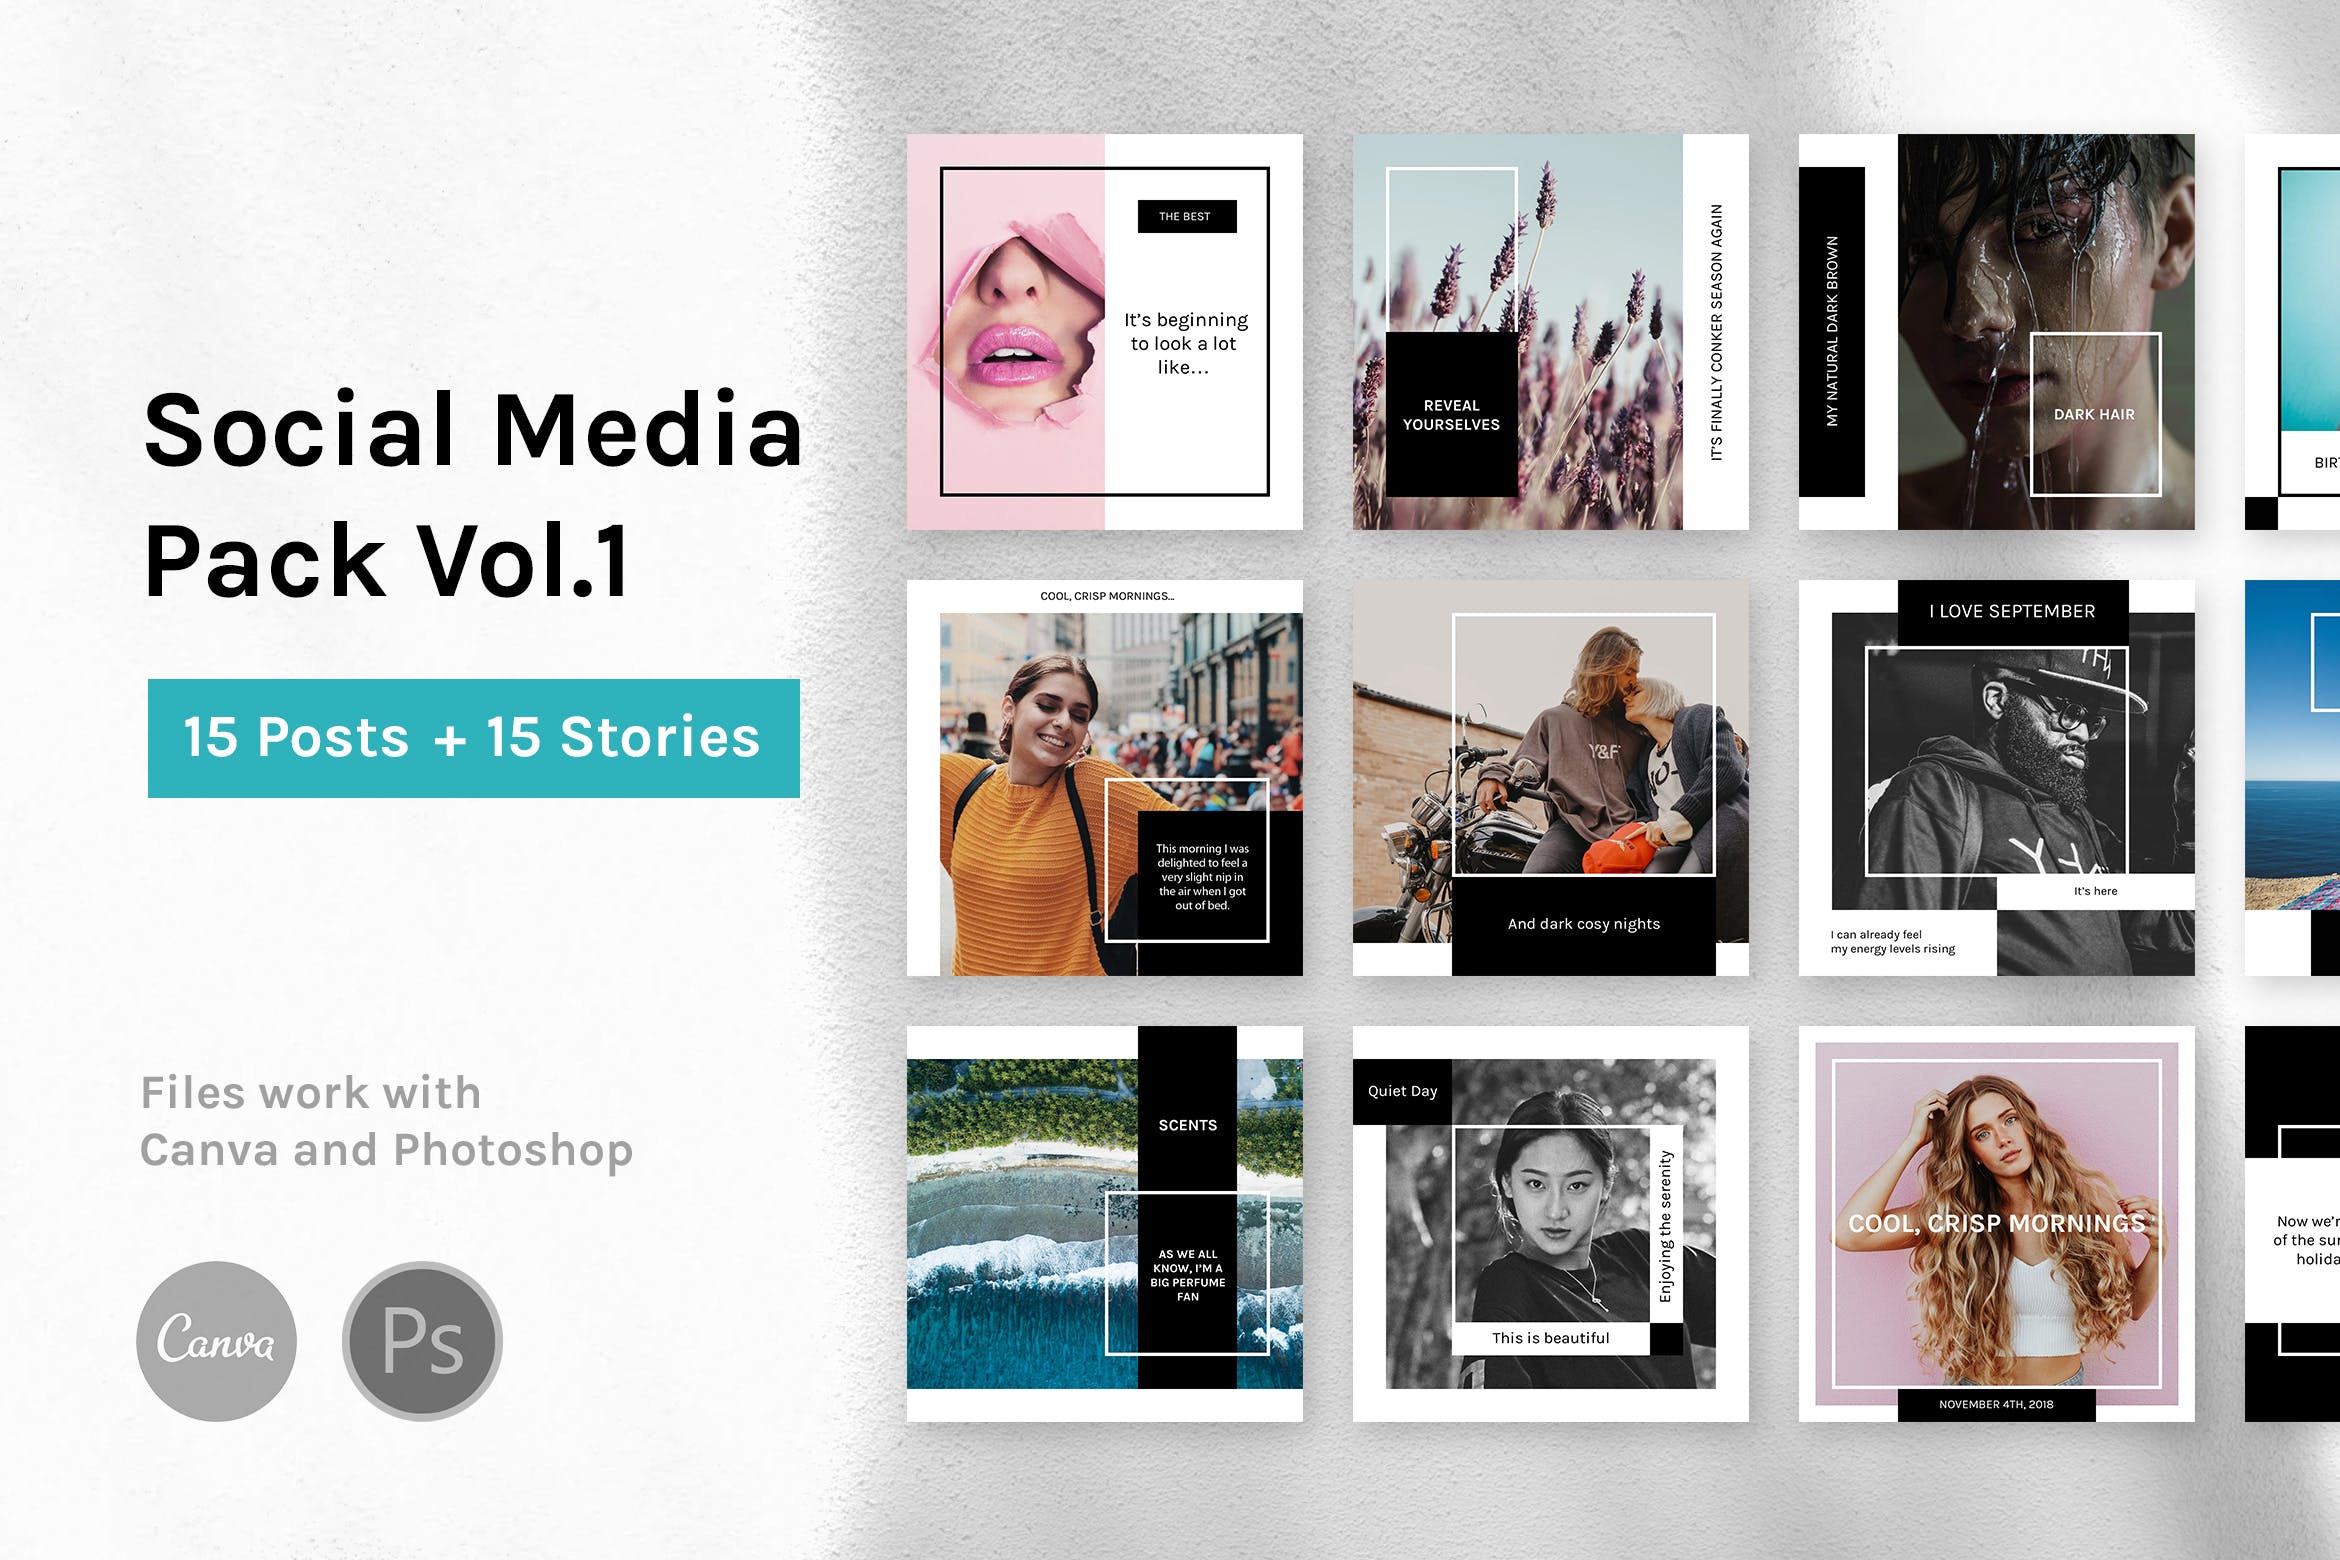 社交媒体自媒体品牌故事&贴图设计模板非凡图库精选v1 Social Media Pack Vol.1插图